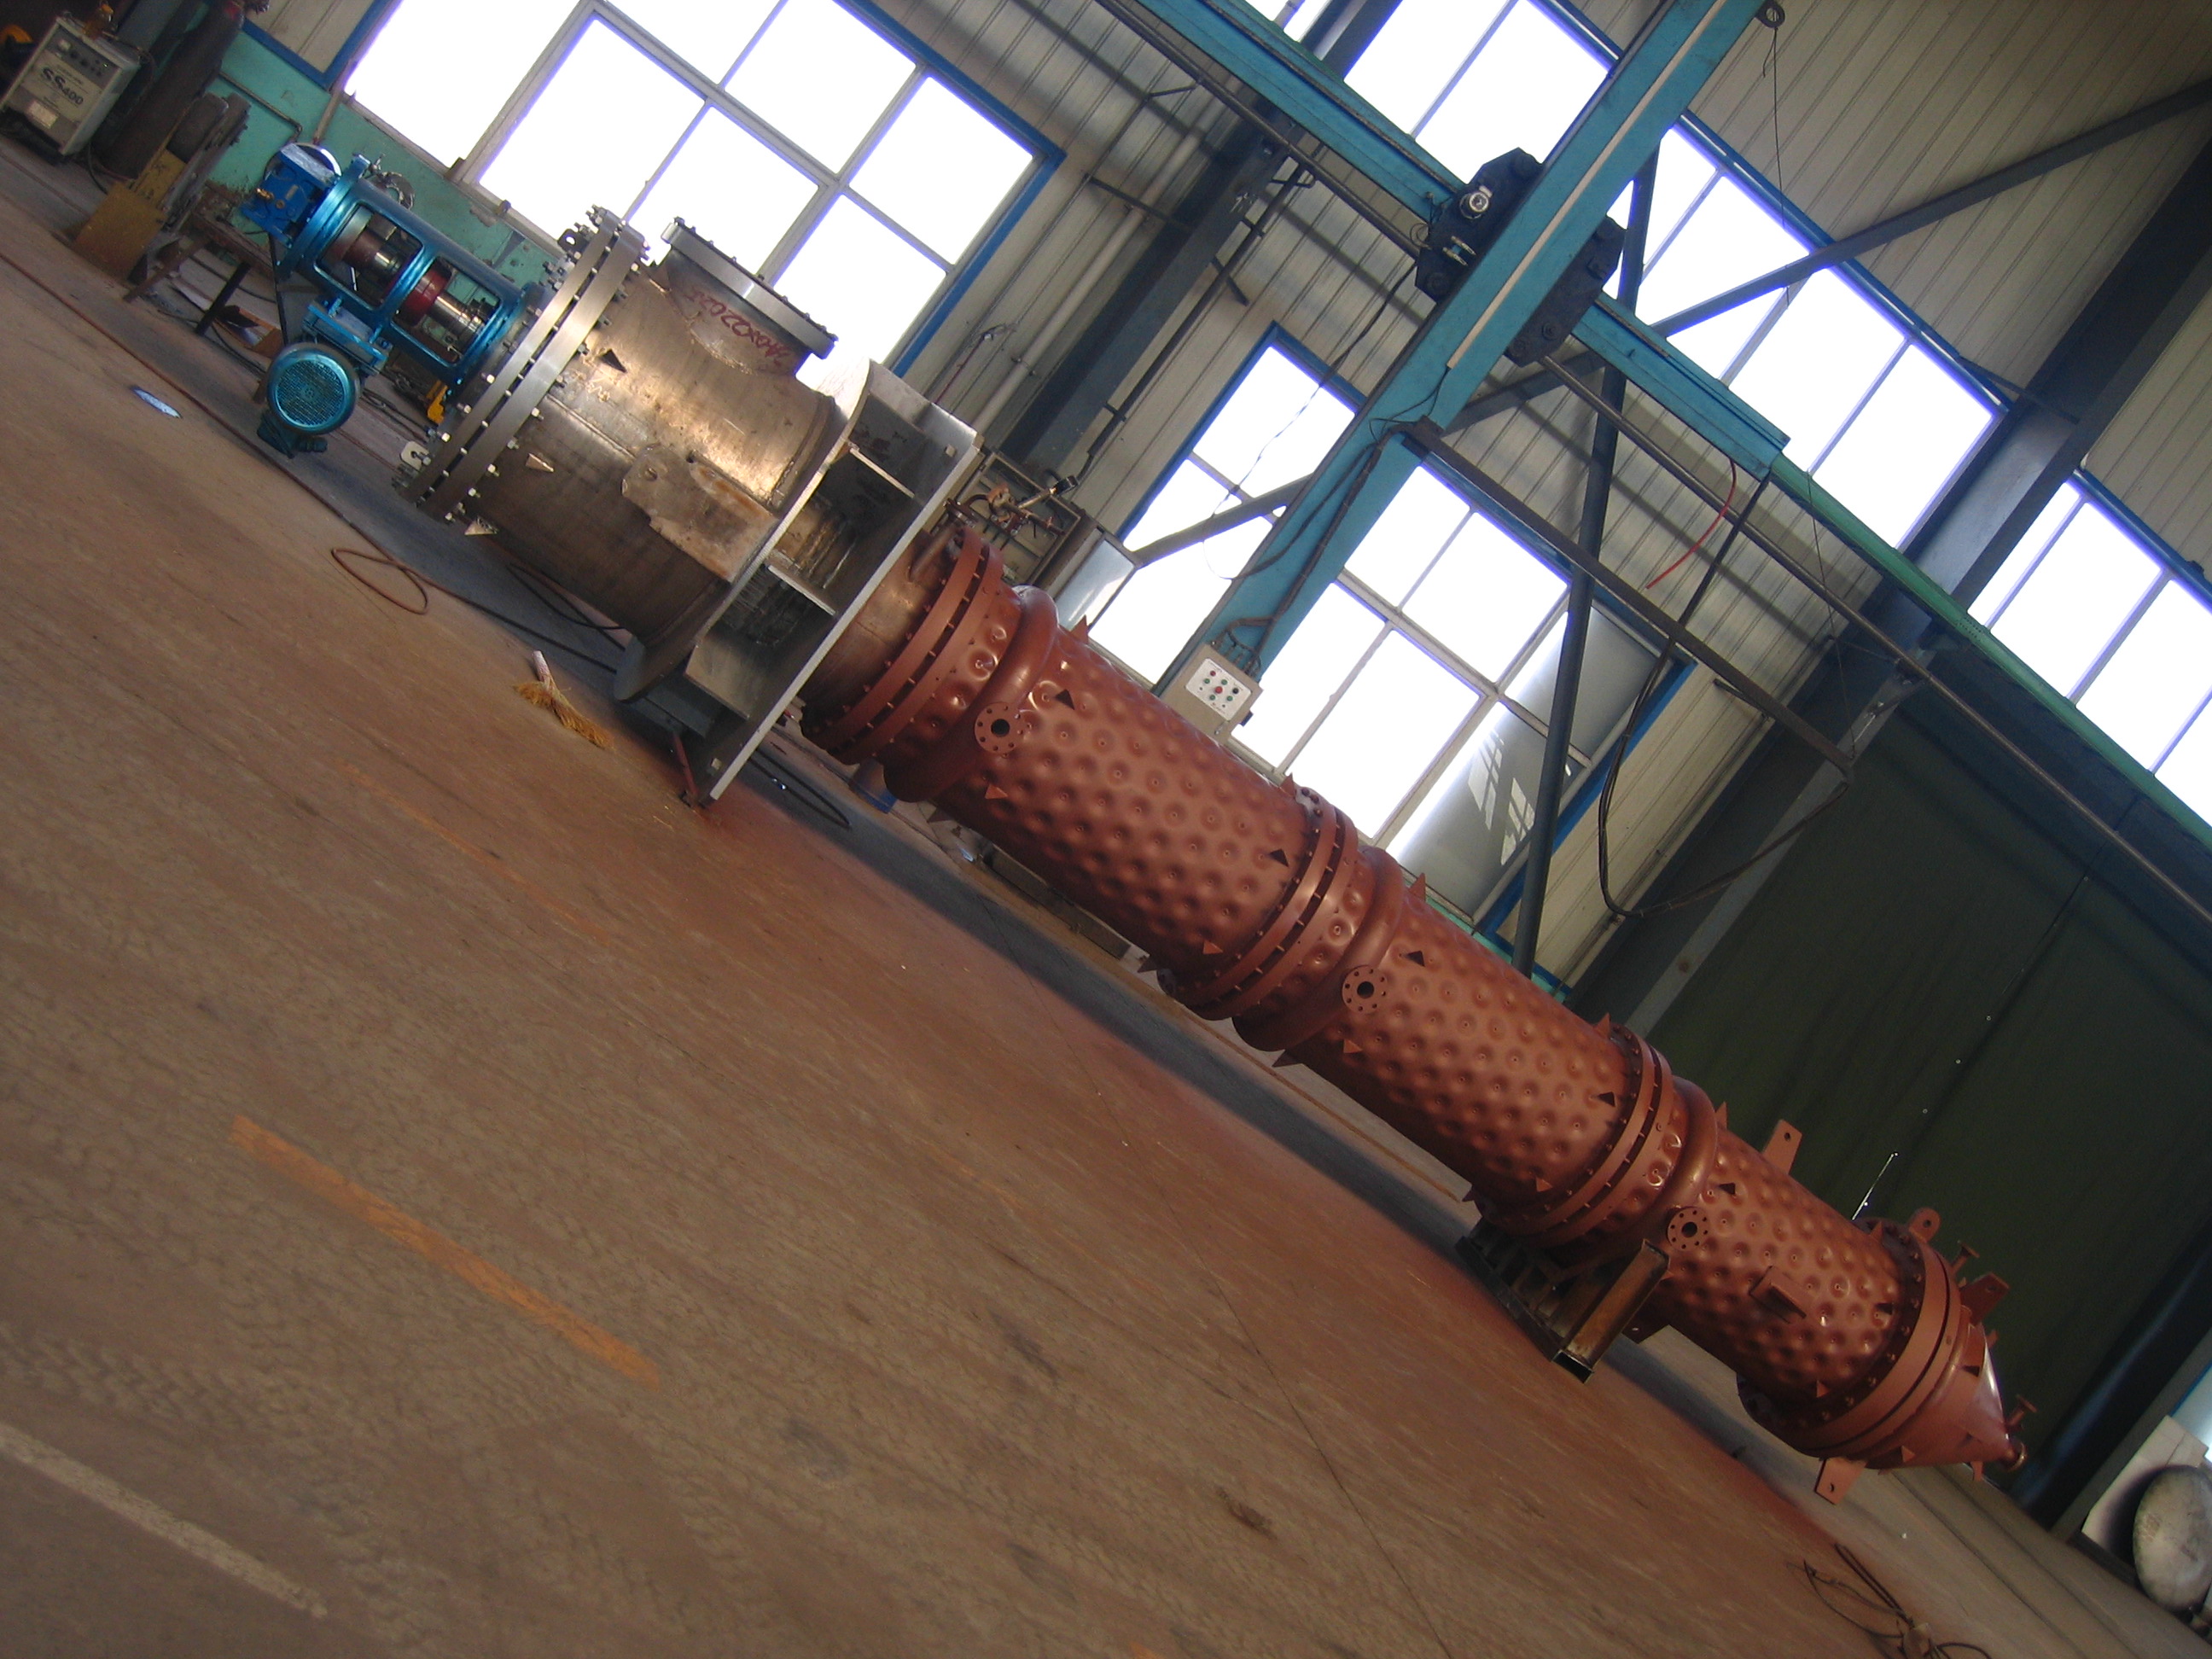 我们推荐大型刮板薄膜蒸发器技术_ 刮板薄膜蒸发器怎么样相关-河北工大科浩工程技术有限公司